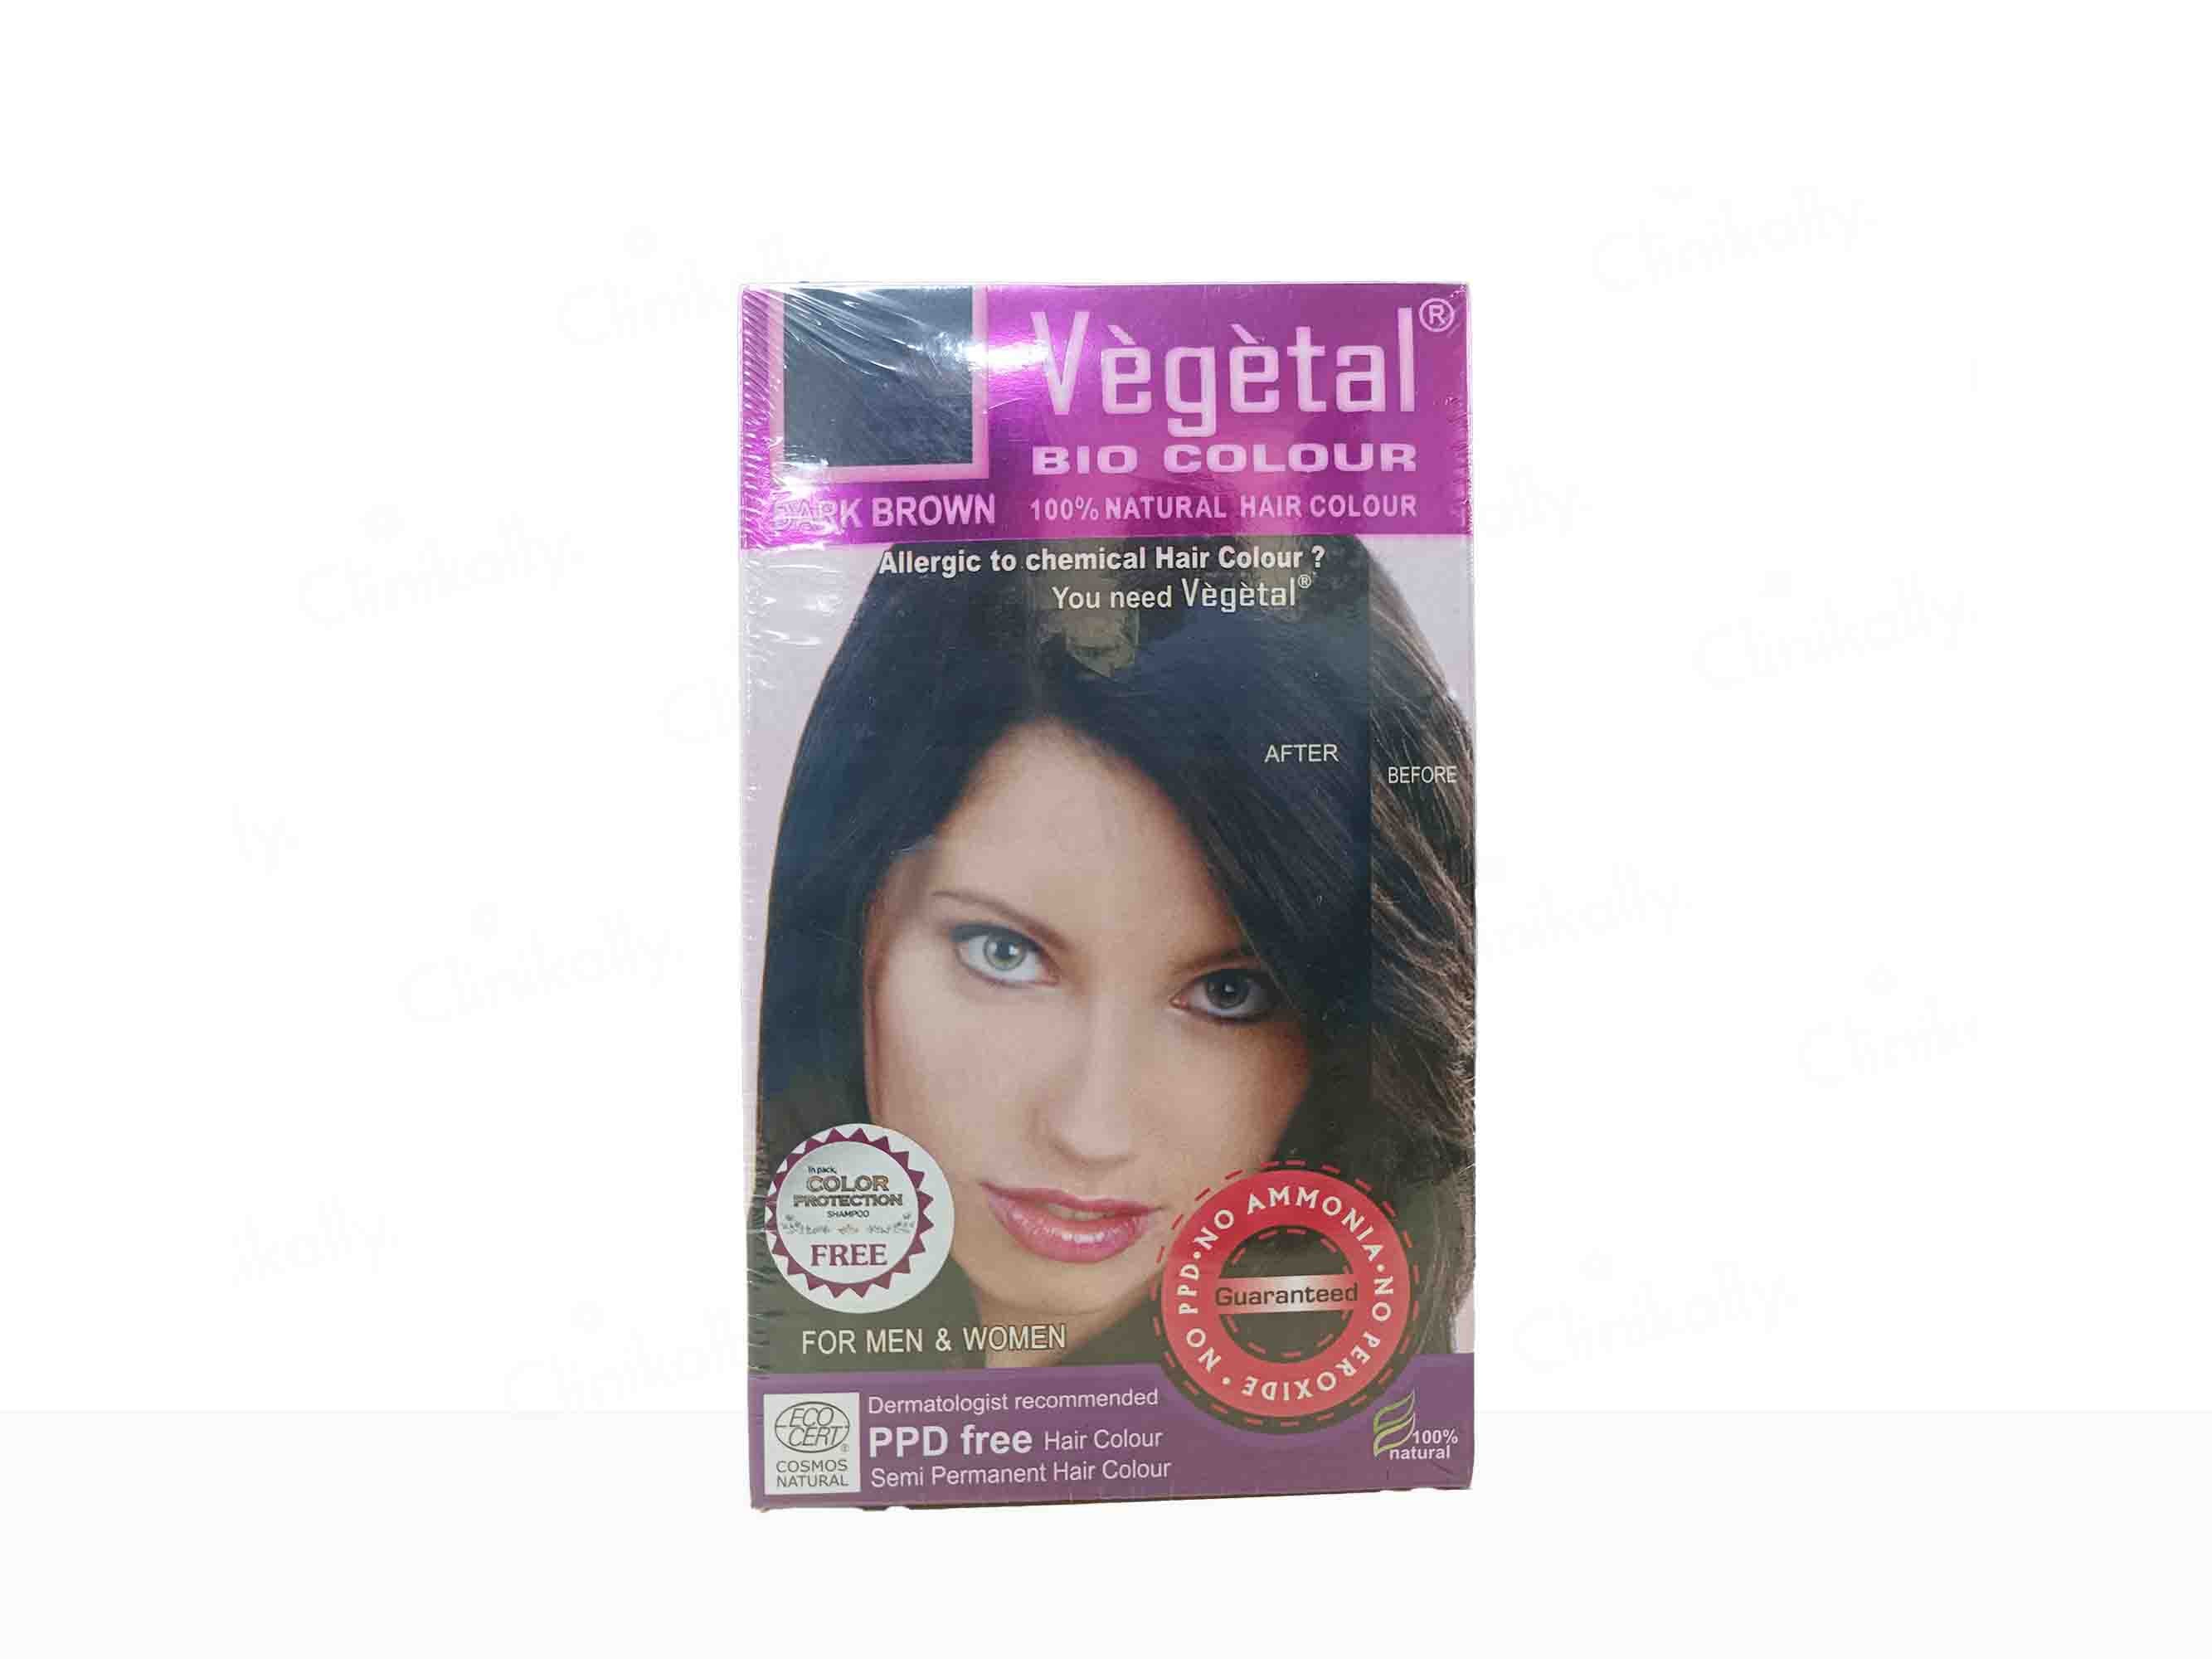 Vegetal Bio Colour 100% Natural Hair Colour For Men & Women - Dark Brown